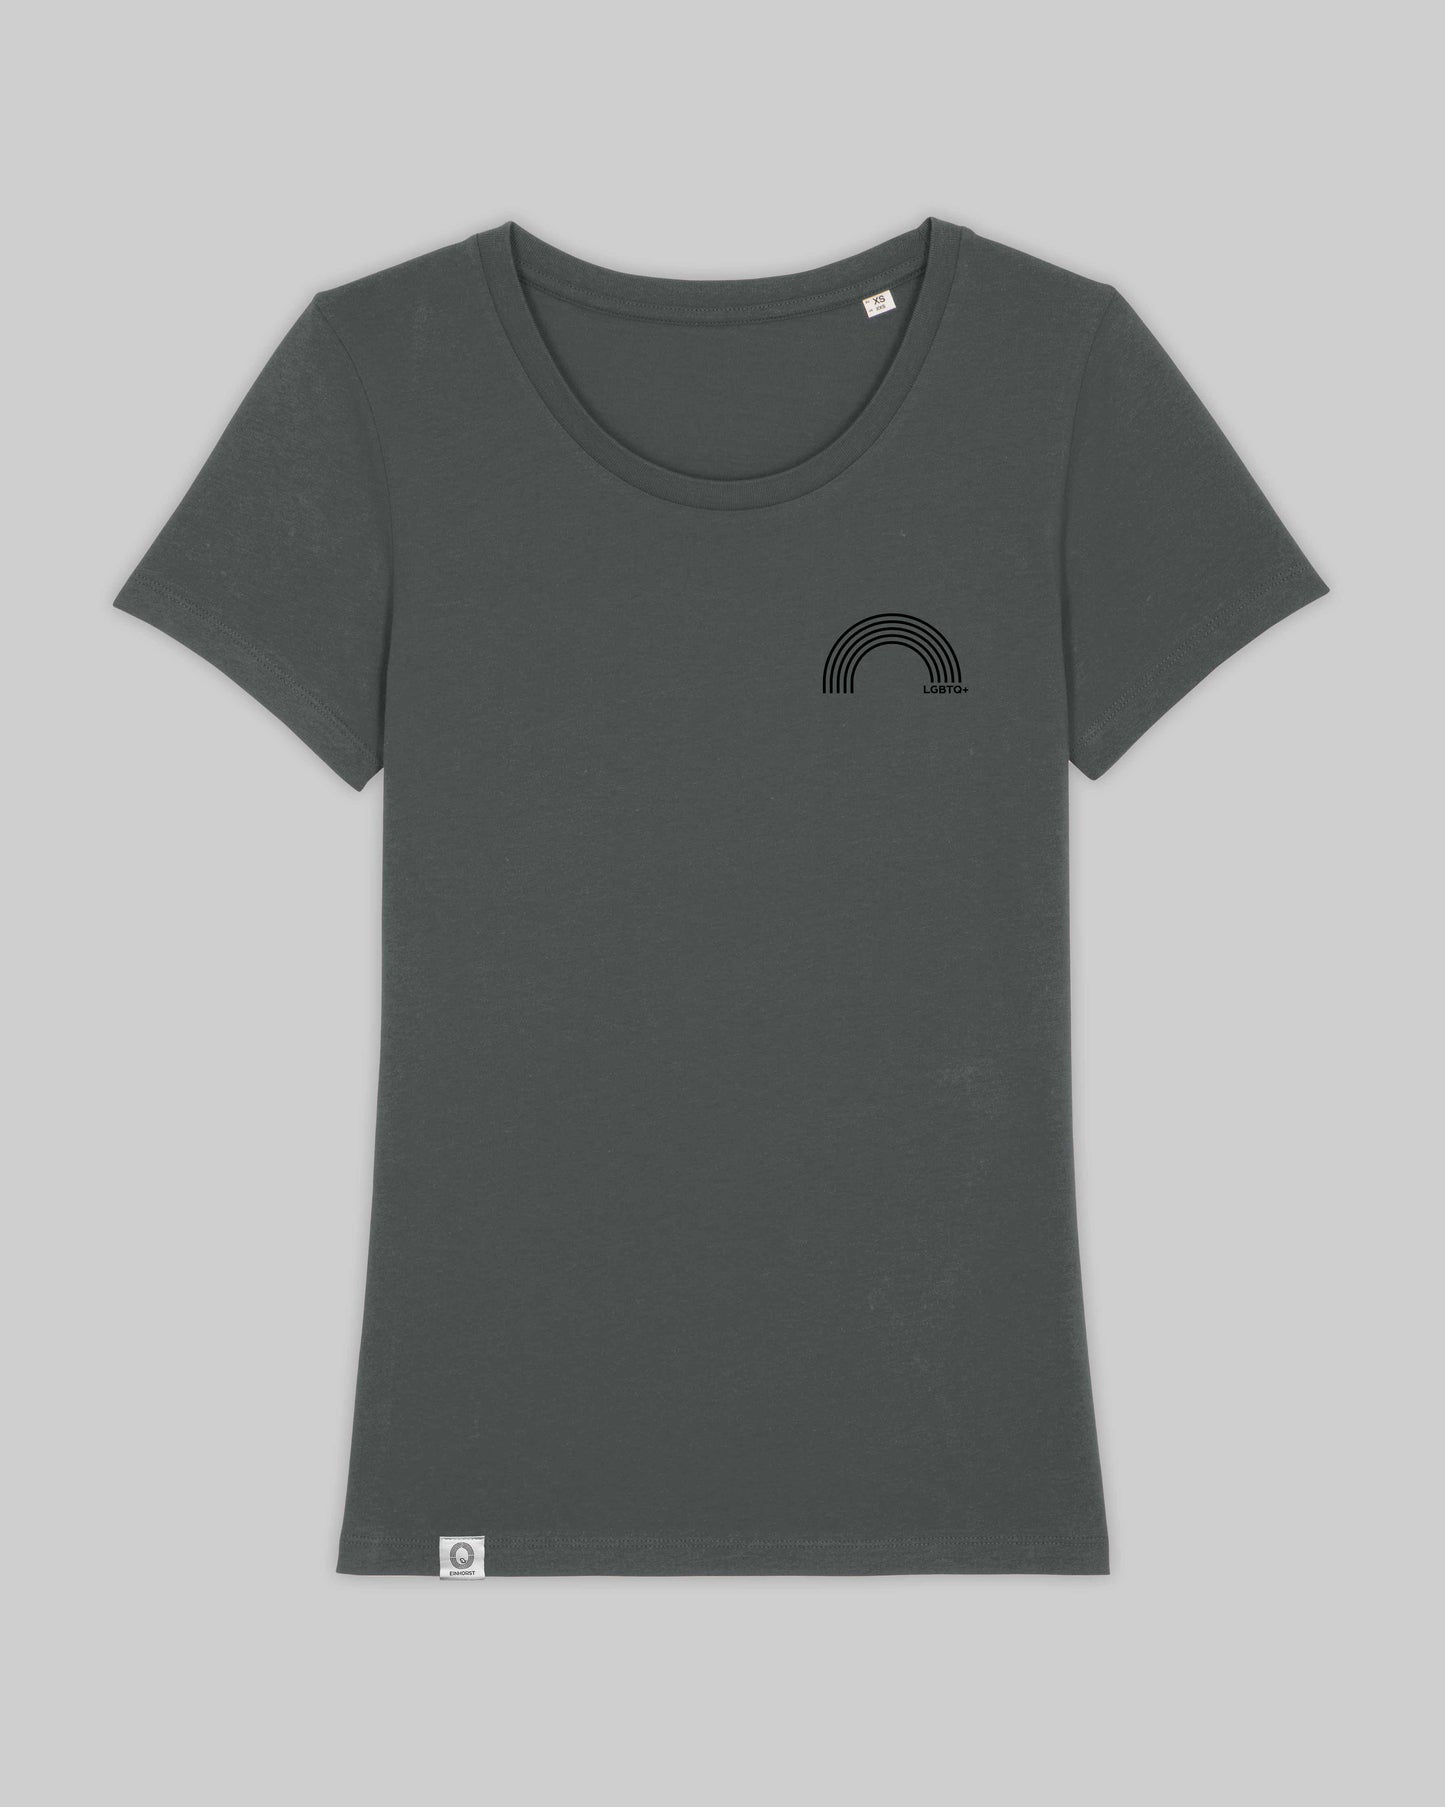 EINHORST® Organic Shirt tailliert in "Anthracite" mit dem Motiv "lgbtq+ Regenbogen" in der Kombination schwarzer Regenbogen mit schwarzer Schrift, Bild von Shirt von vorne